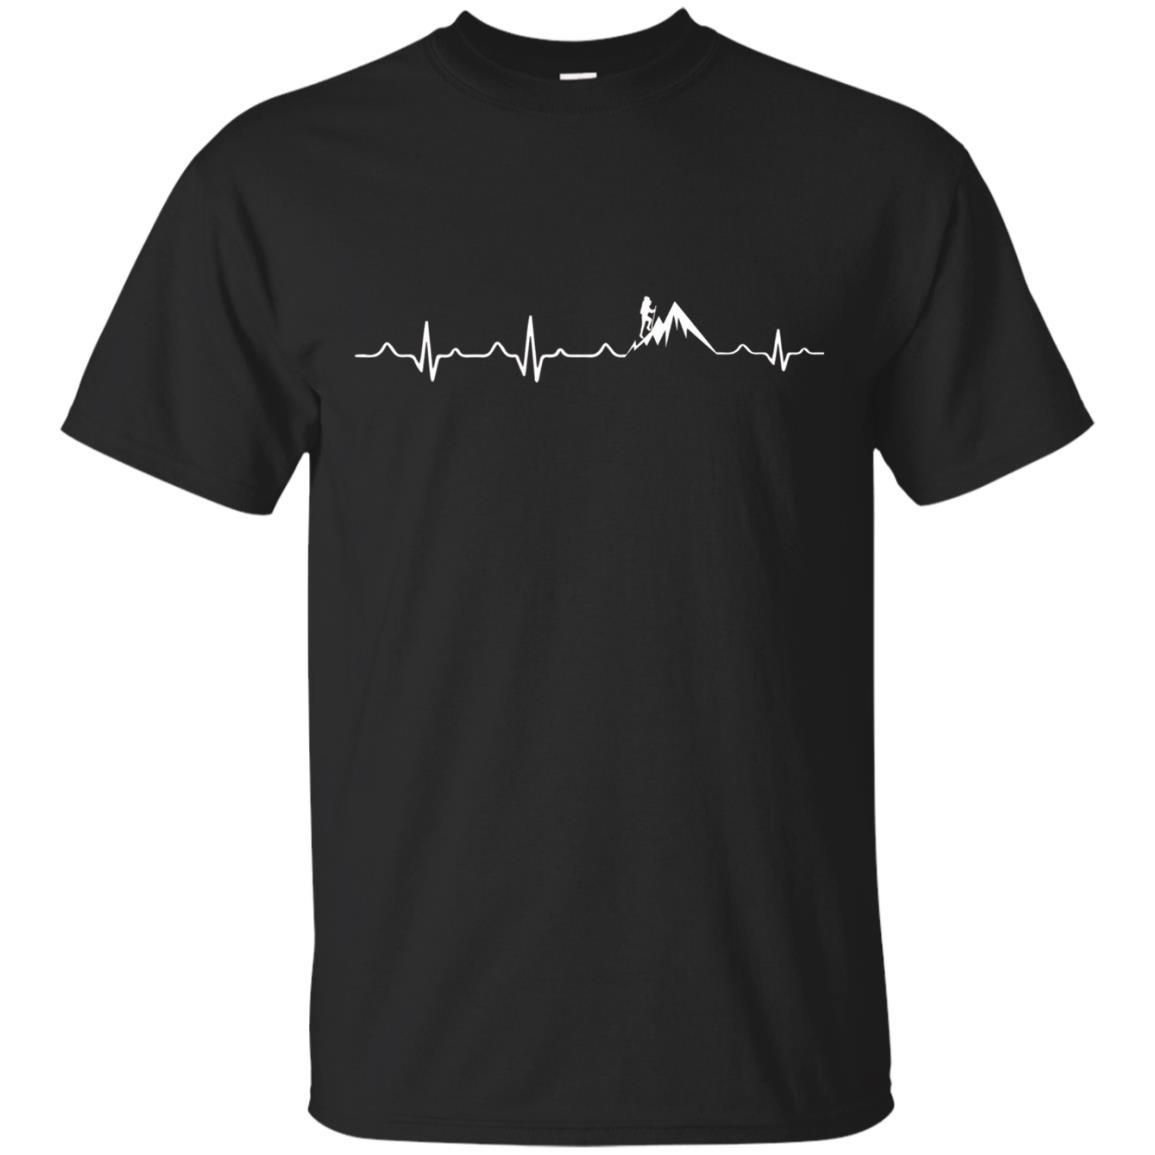 Hike Heartbeat Shirt, Hiking Shirts For , V1